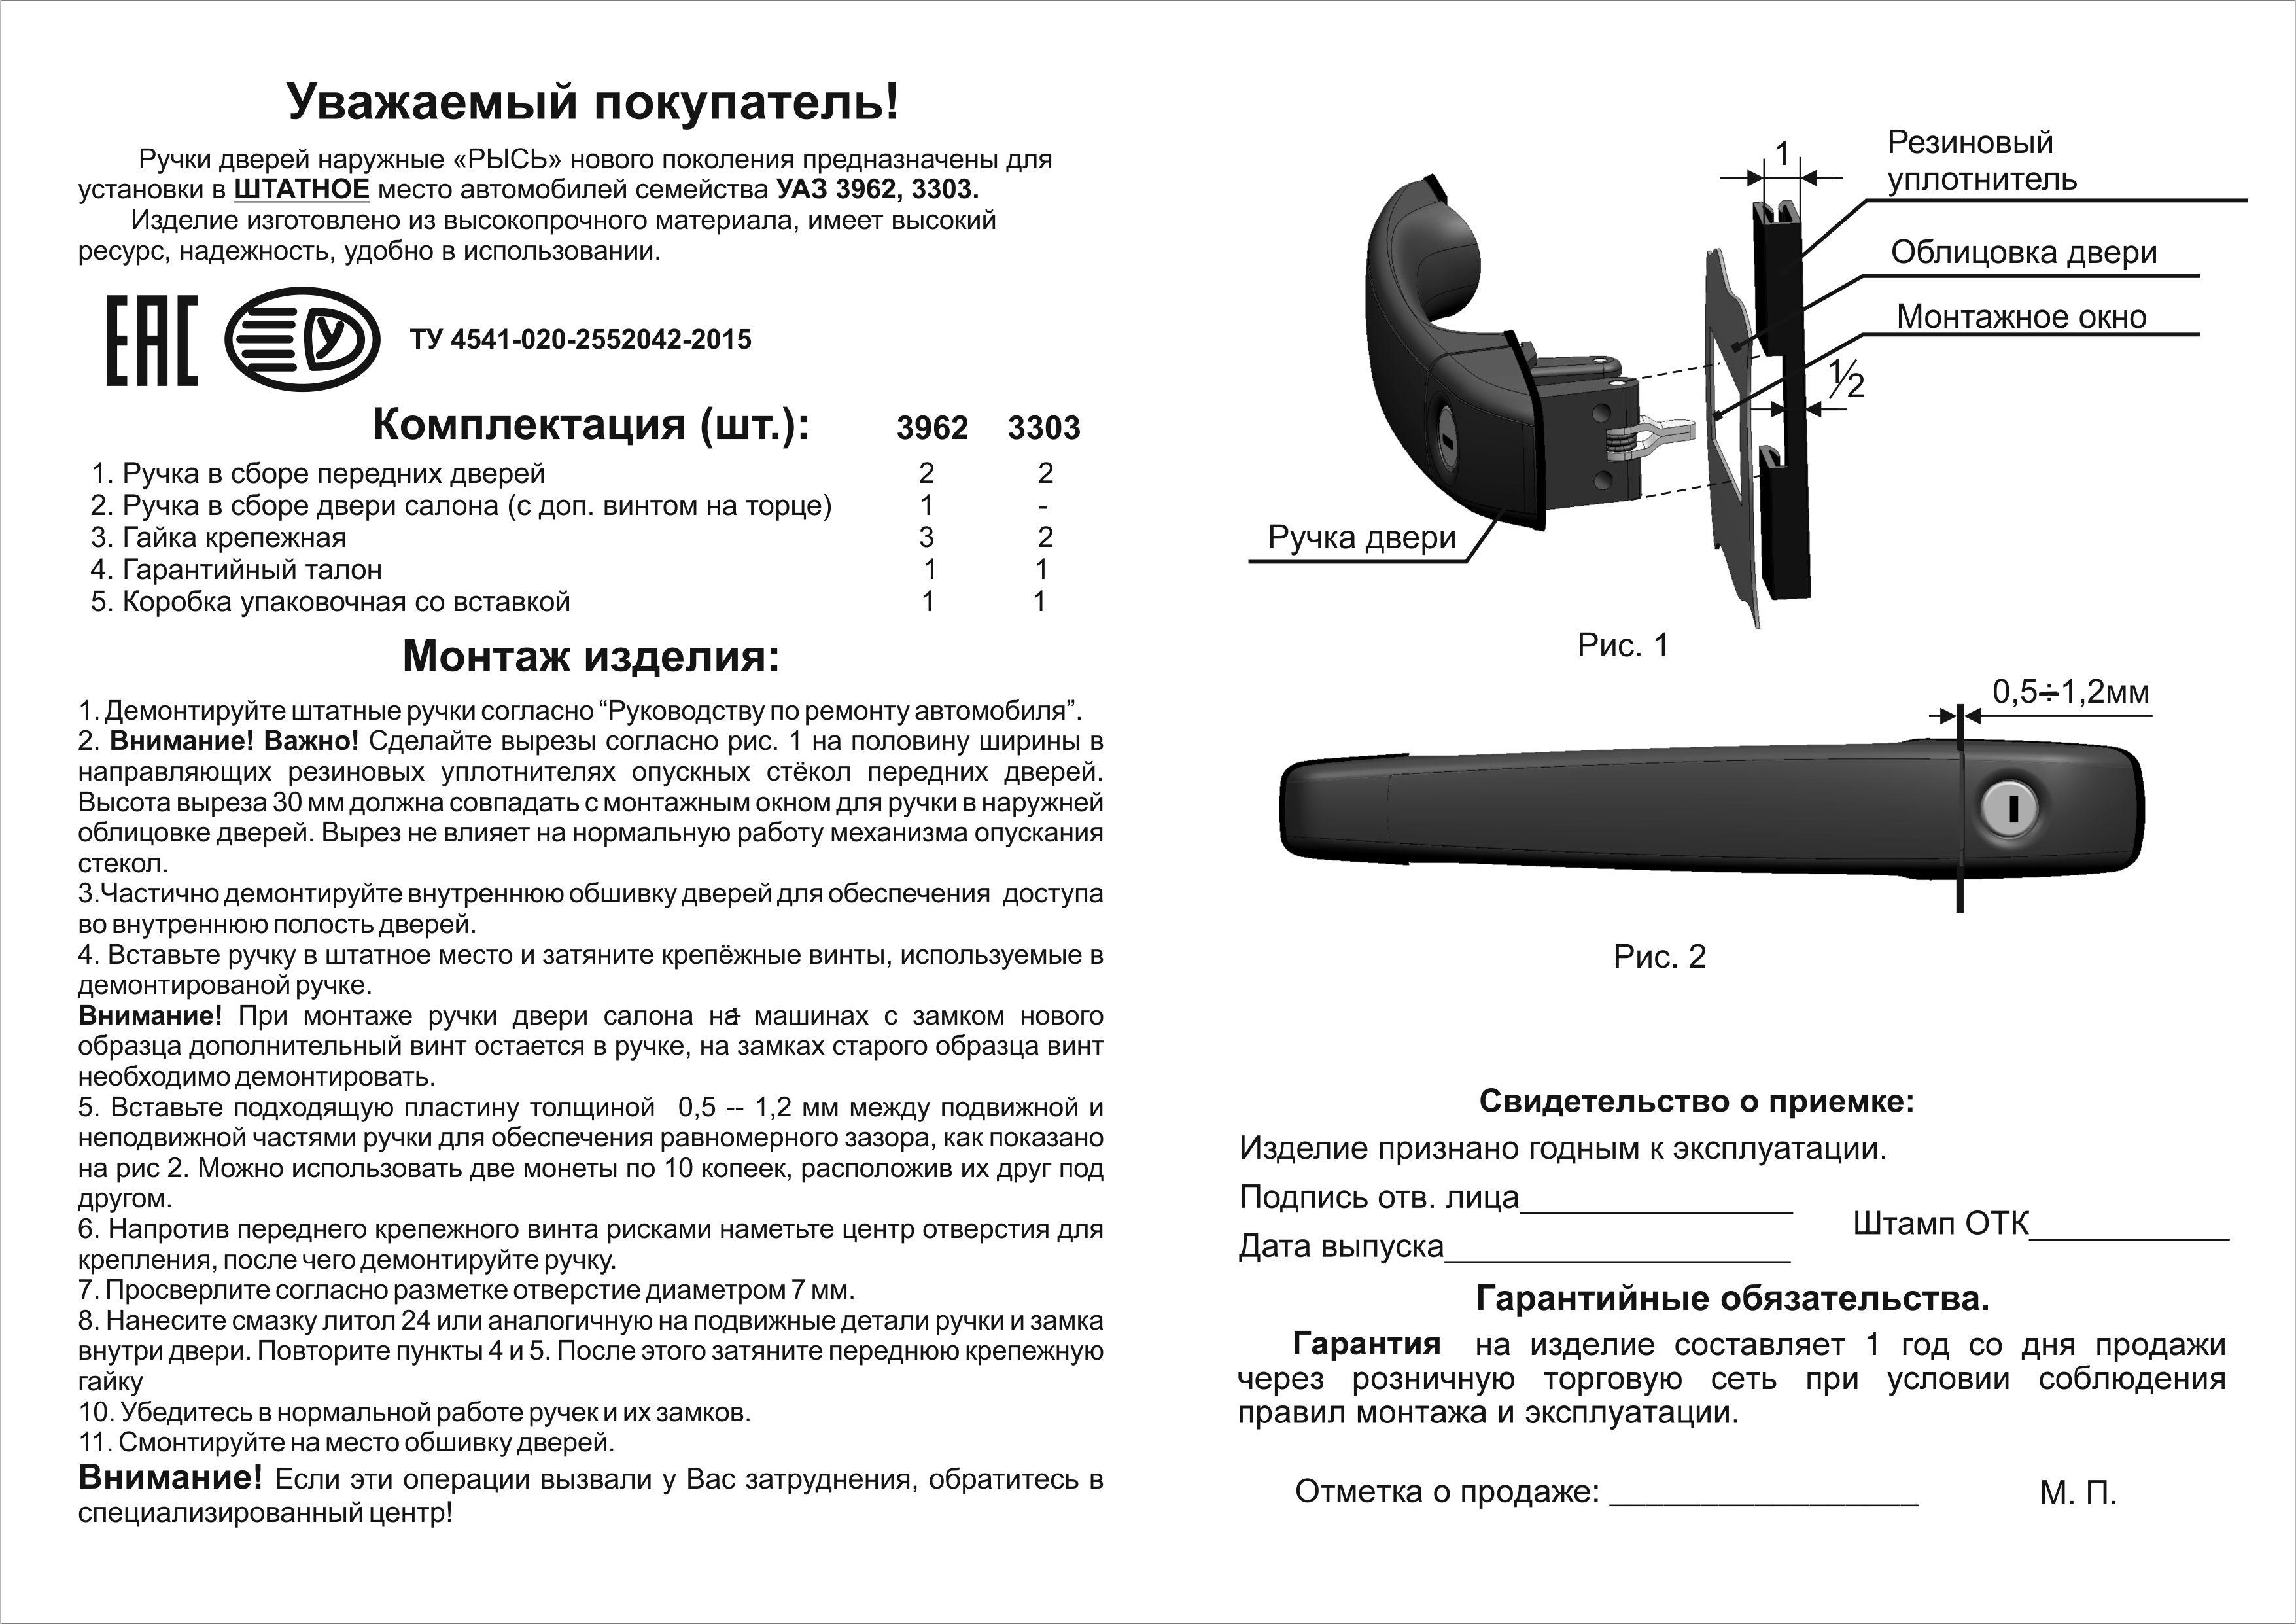 Инструкция УАЗ 3962,3303 ИТОГ